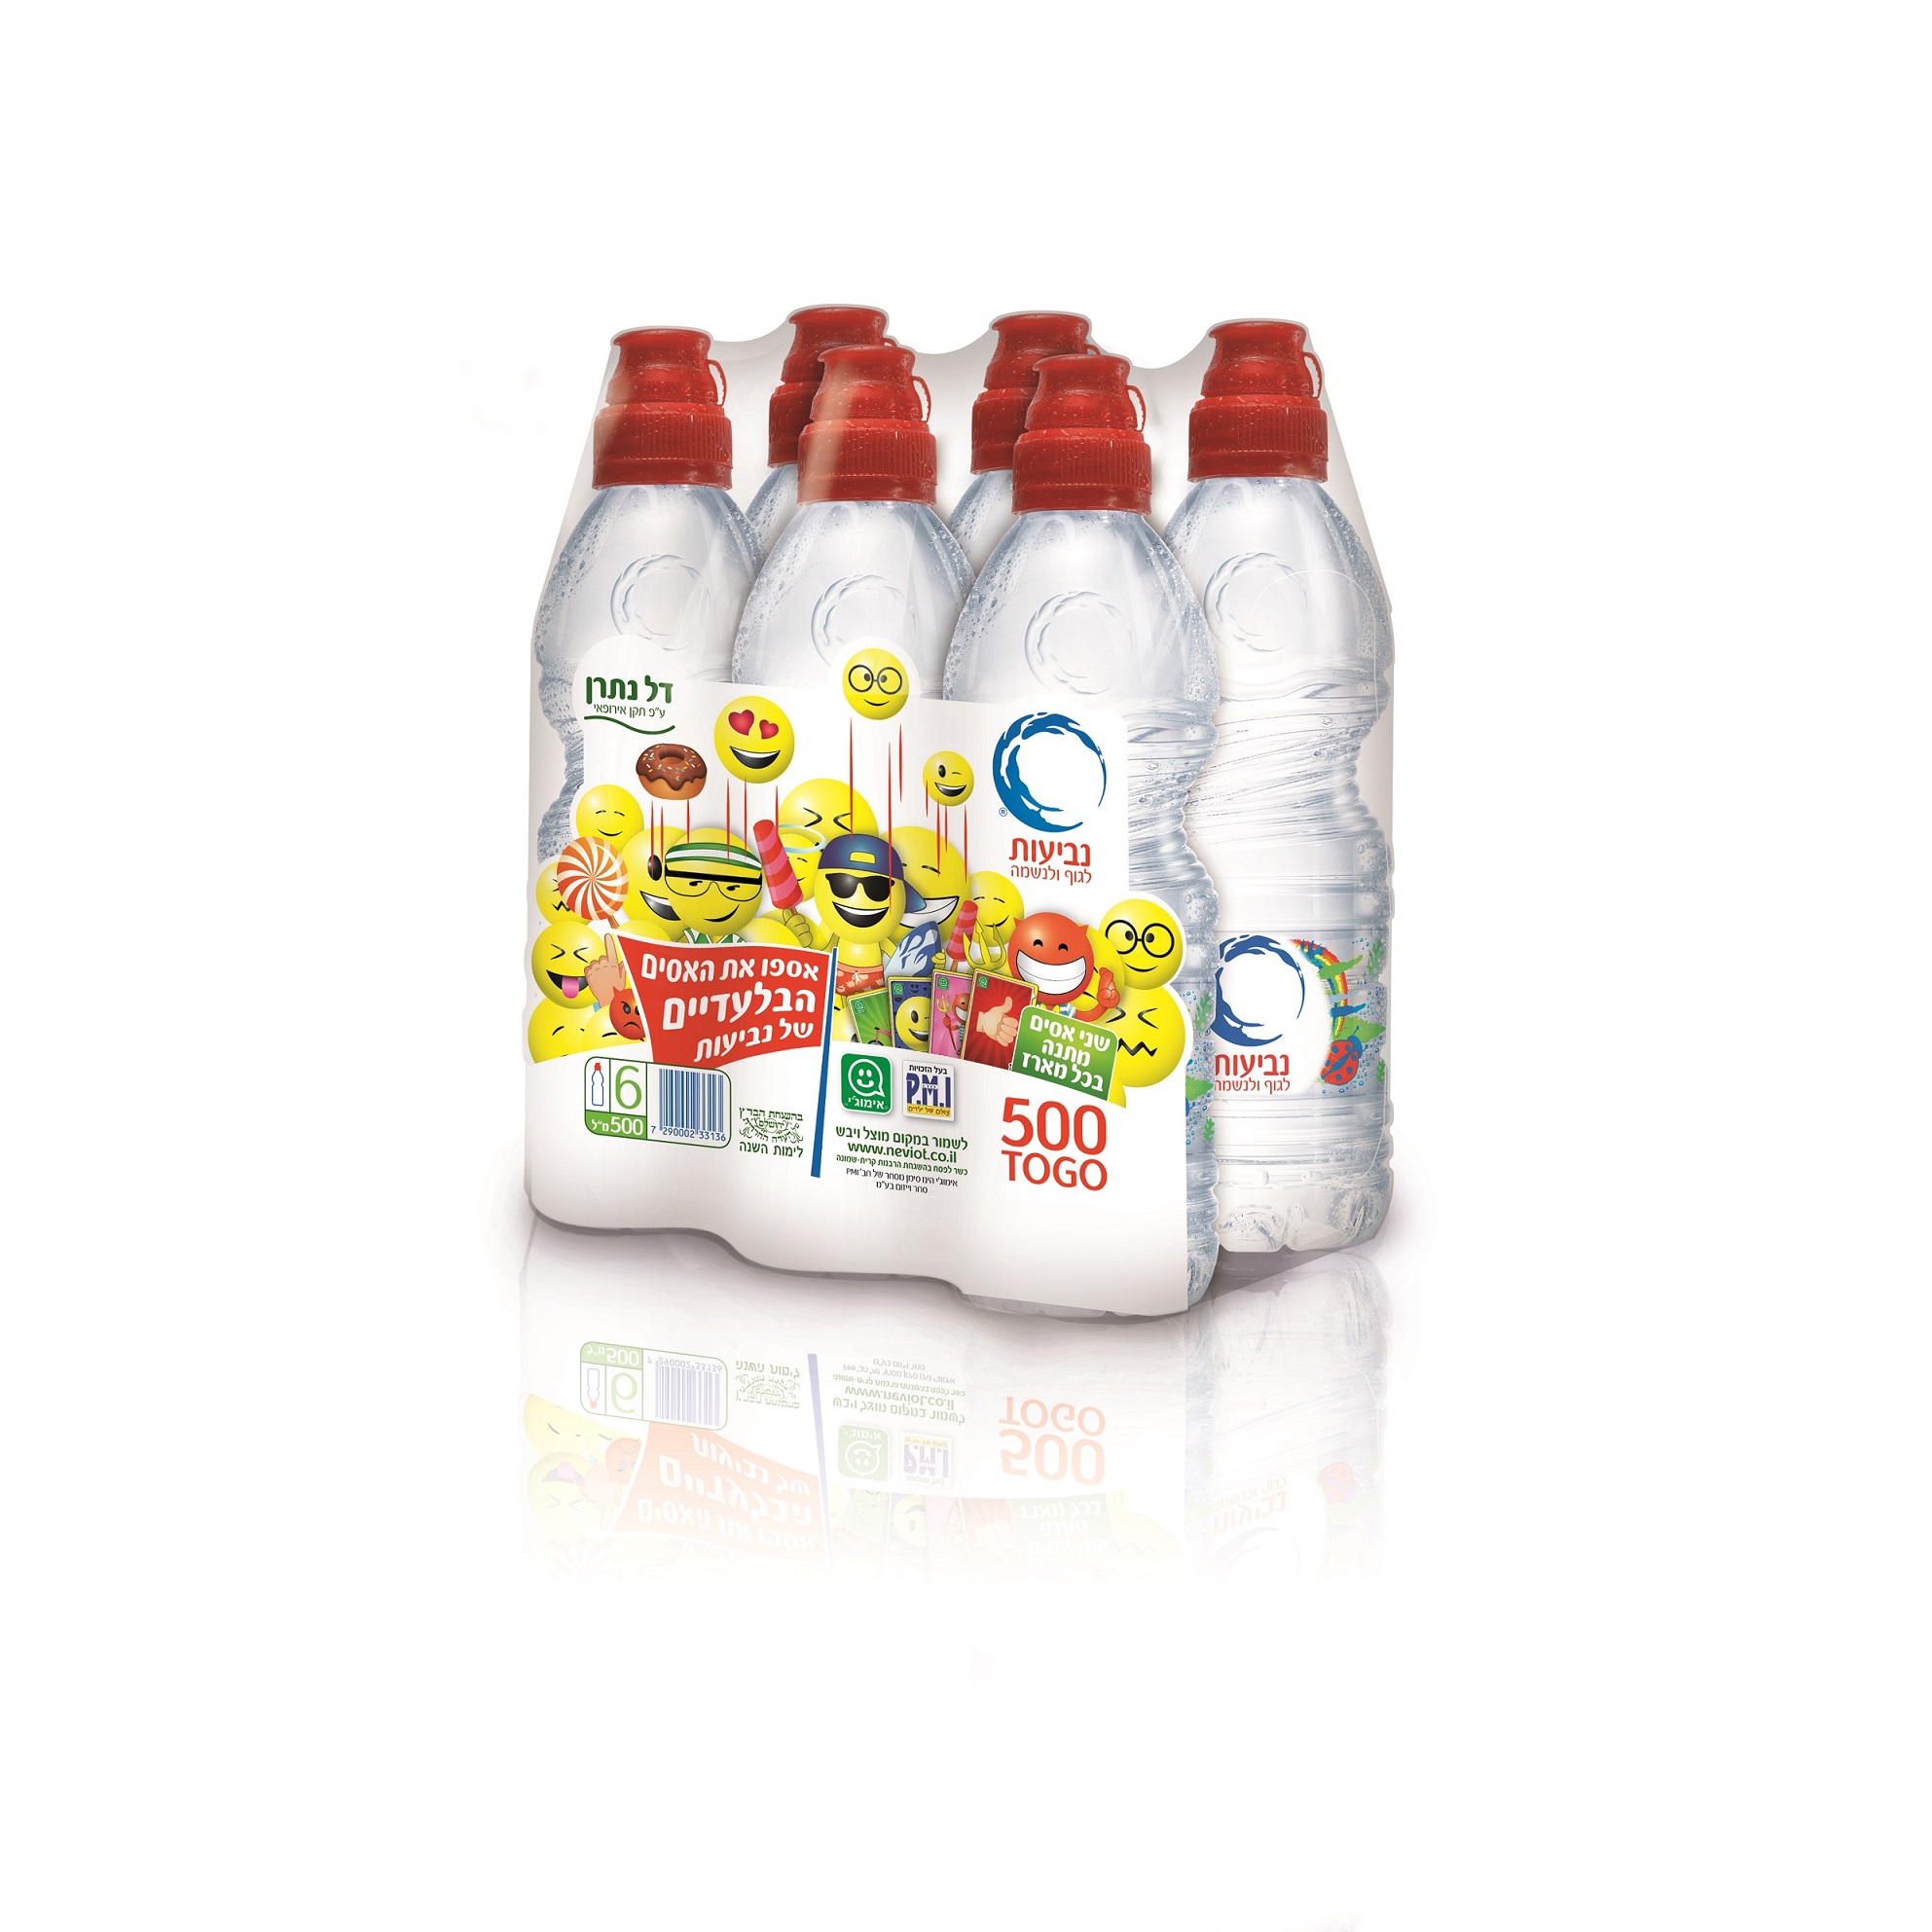 “Невиот” представляет TOGO: упаковку из шести бутылок воды с двумя смайликами